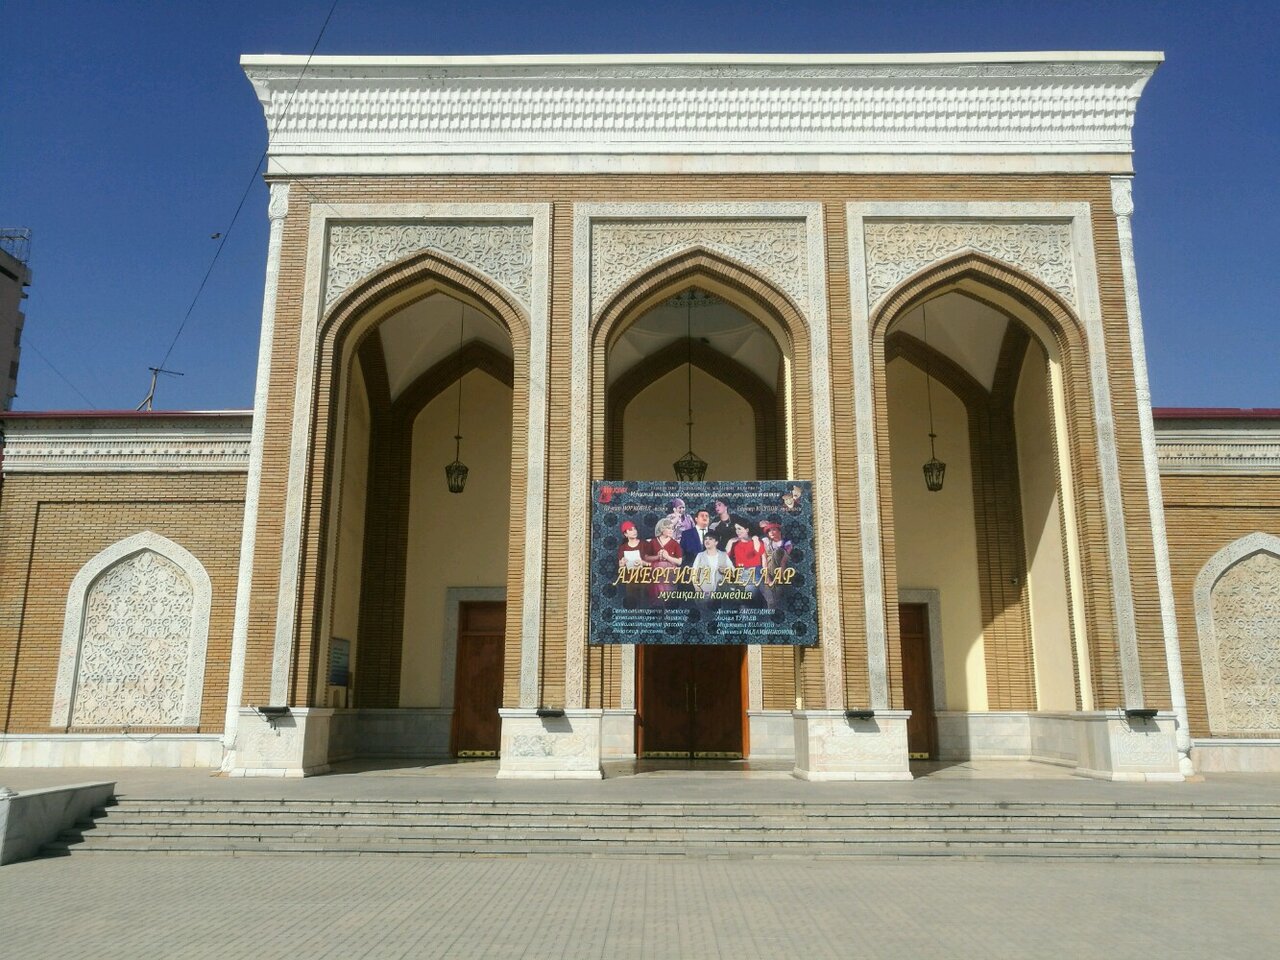 Muqimiy Theatre